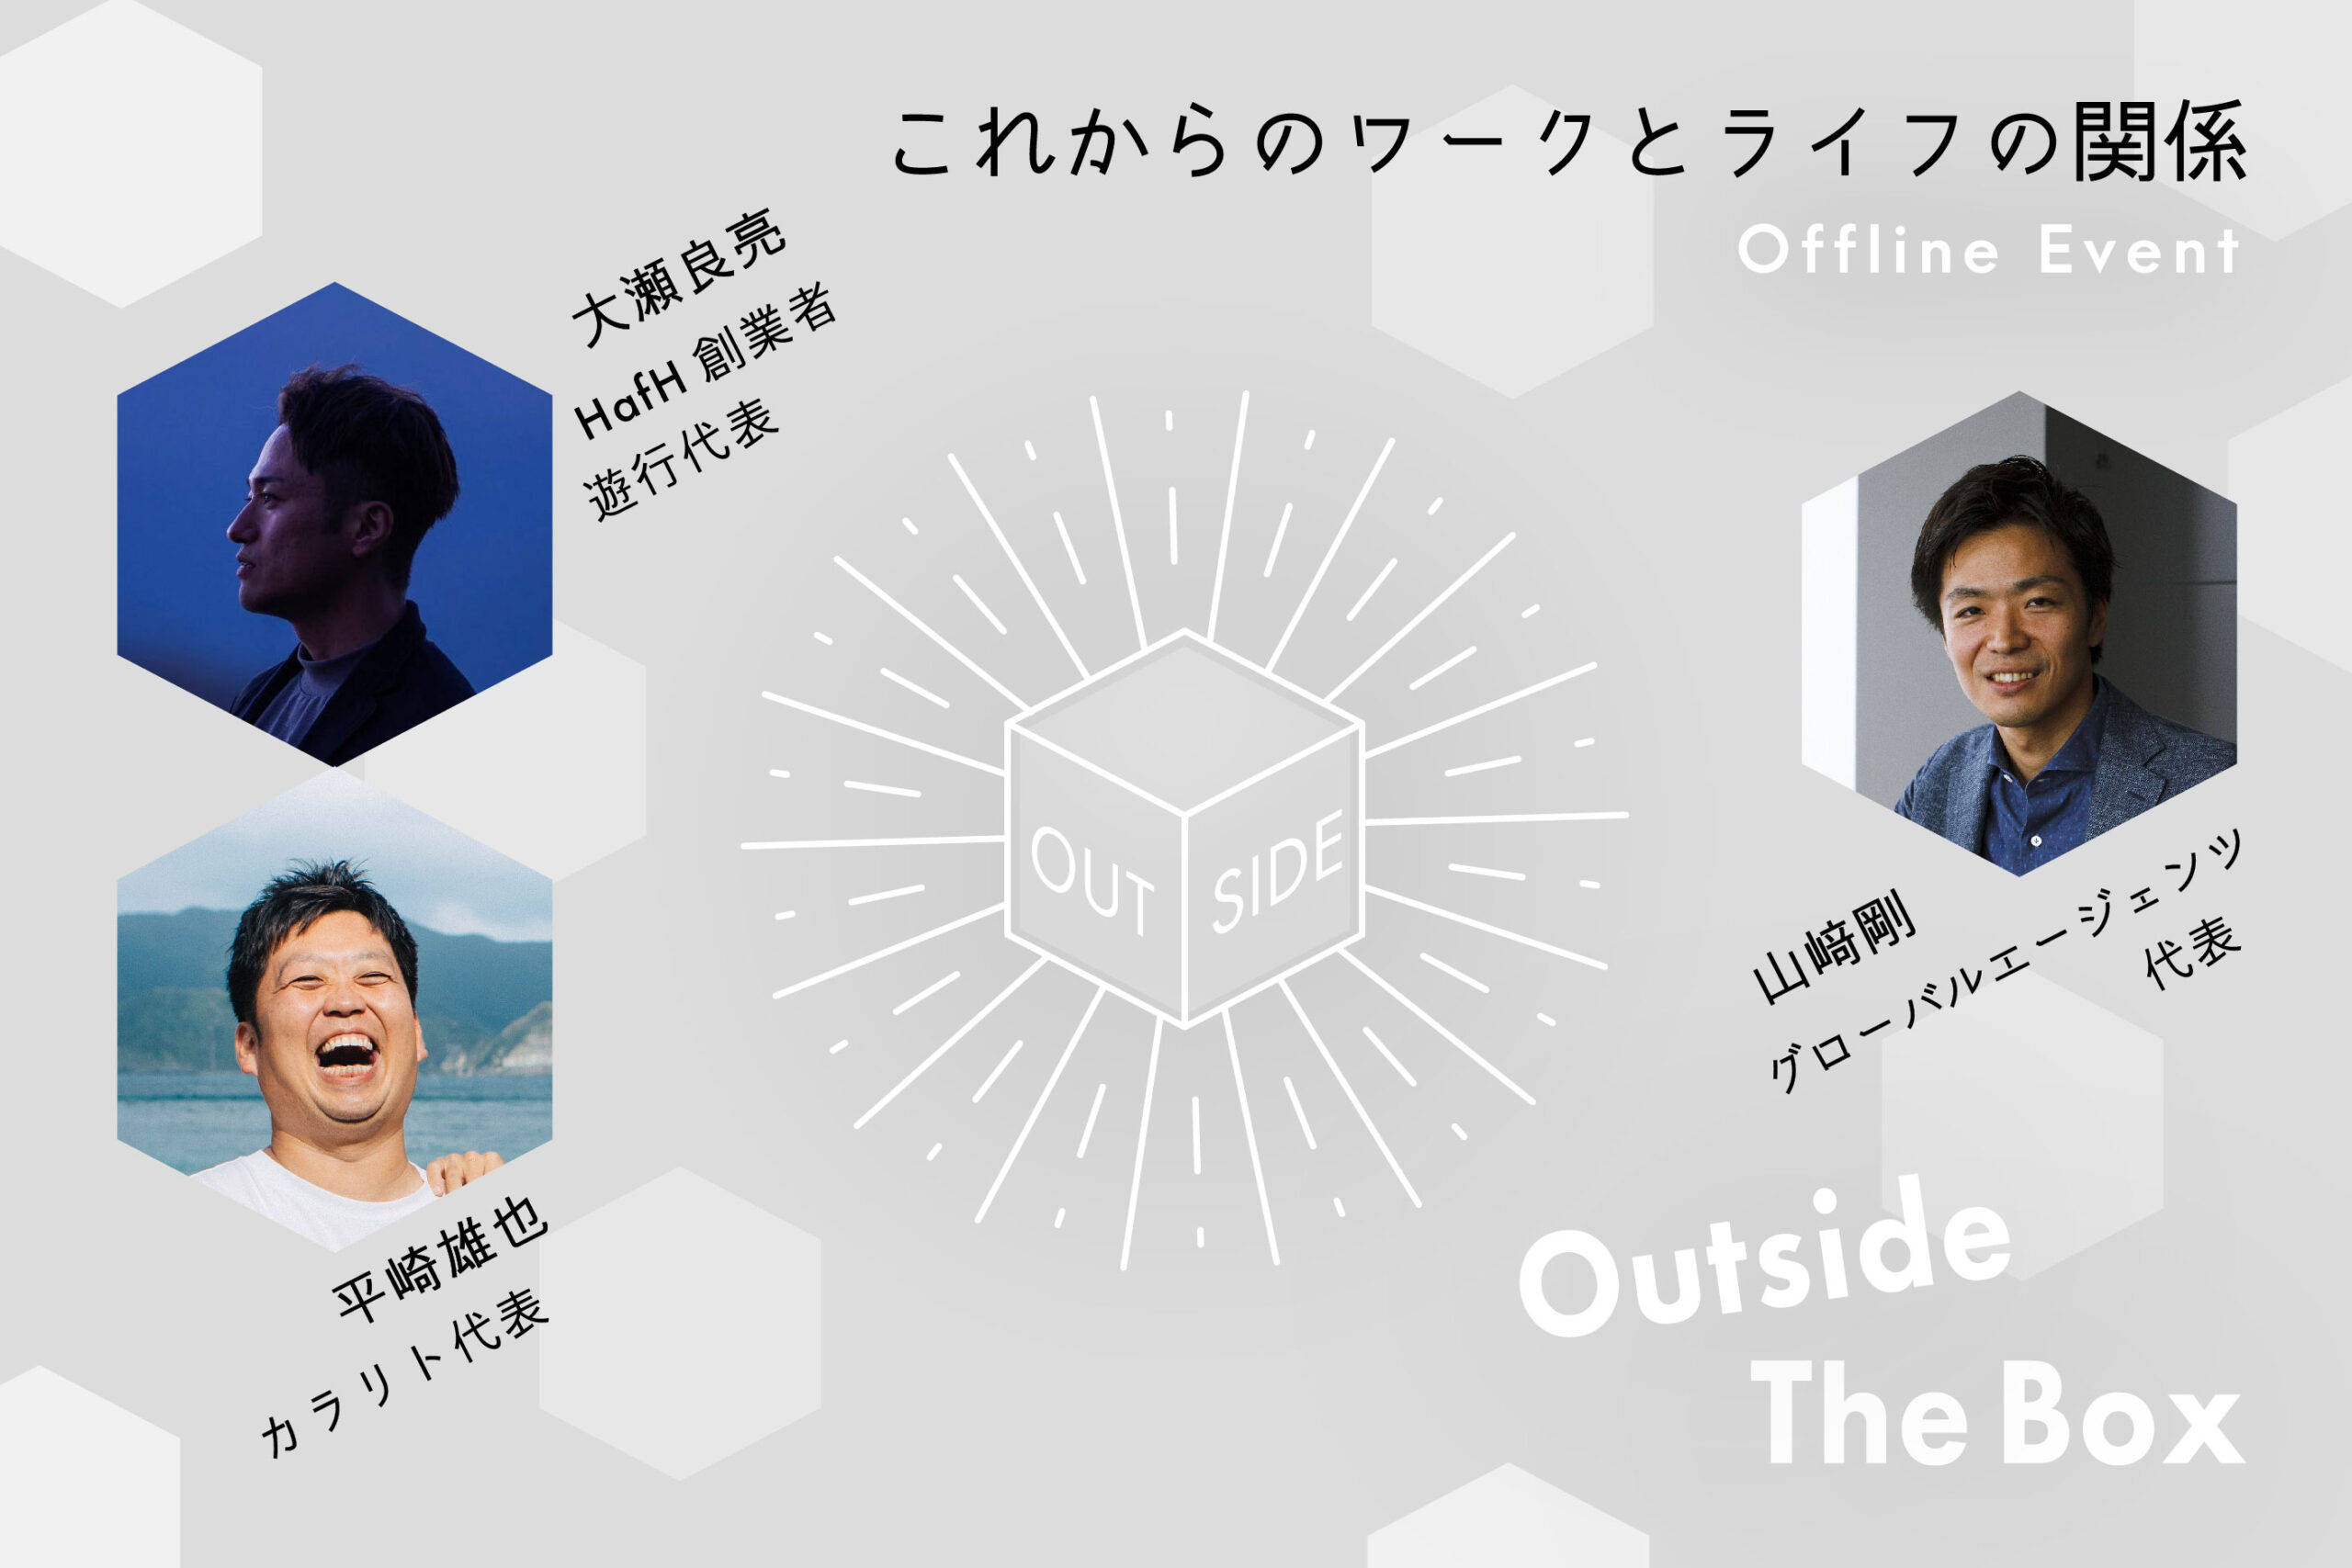 【.andwork 渋谷】これからのワークとライフを考えるトーク&ギャザリングイベント「Ouside The Box」開催